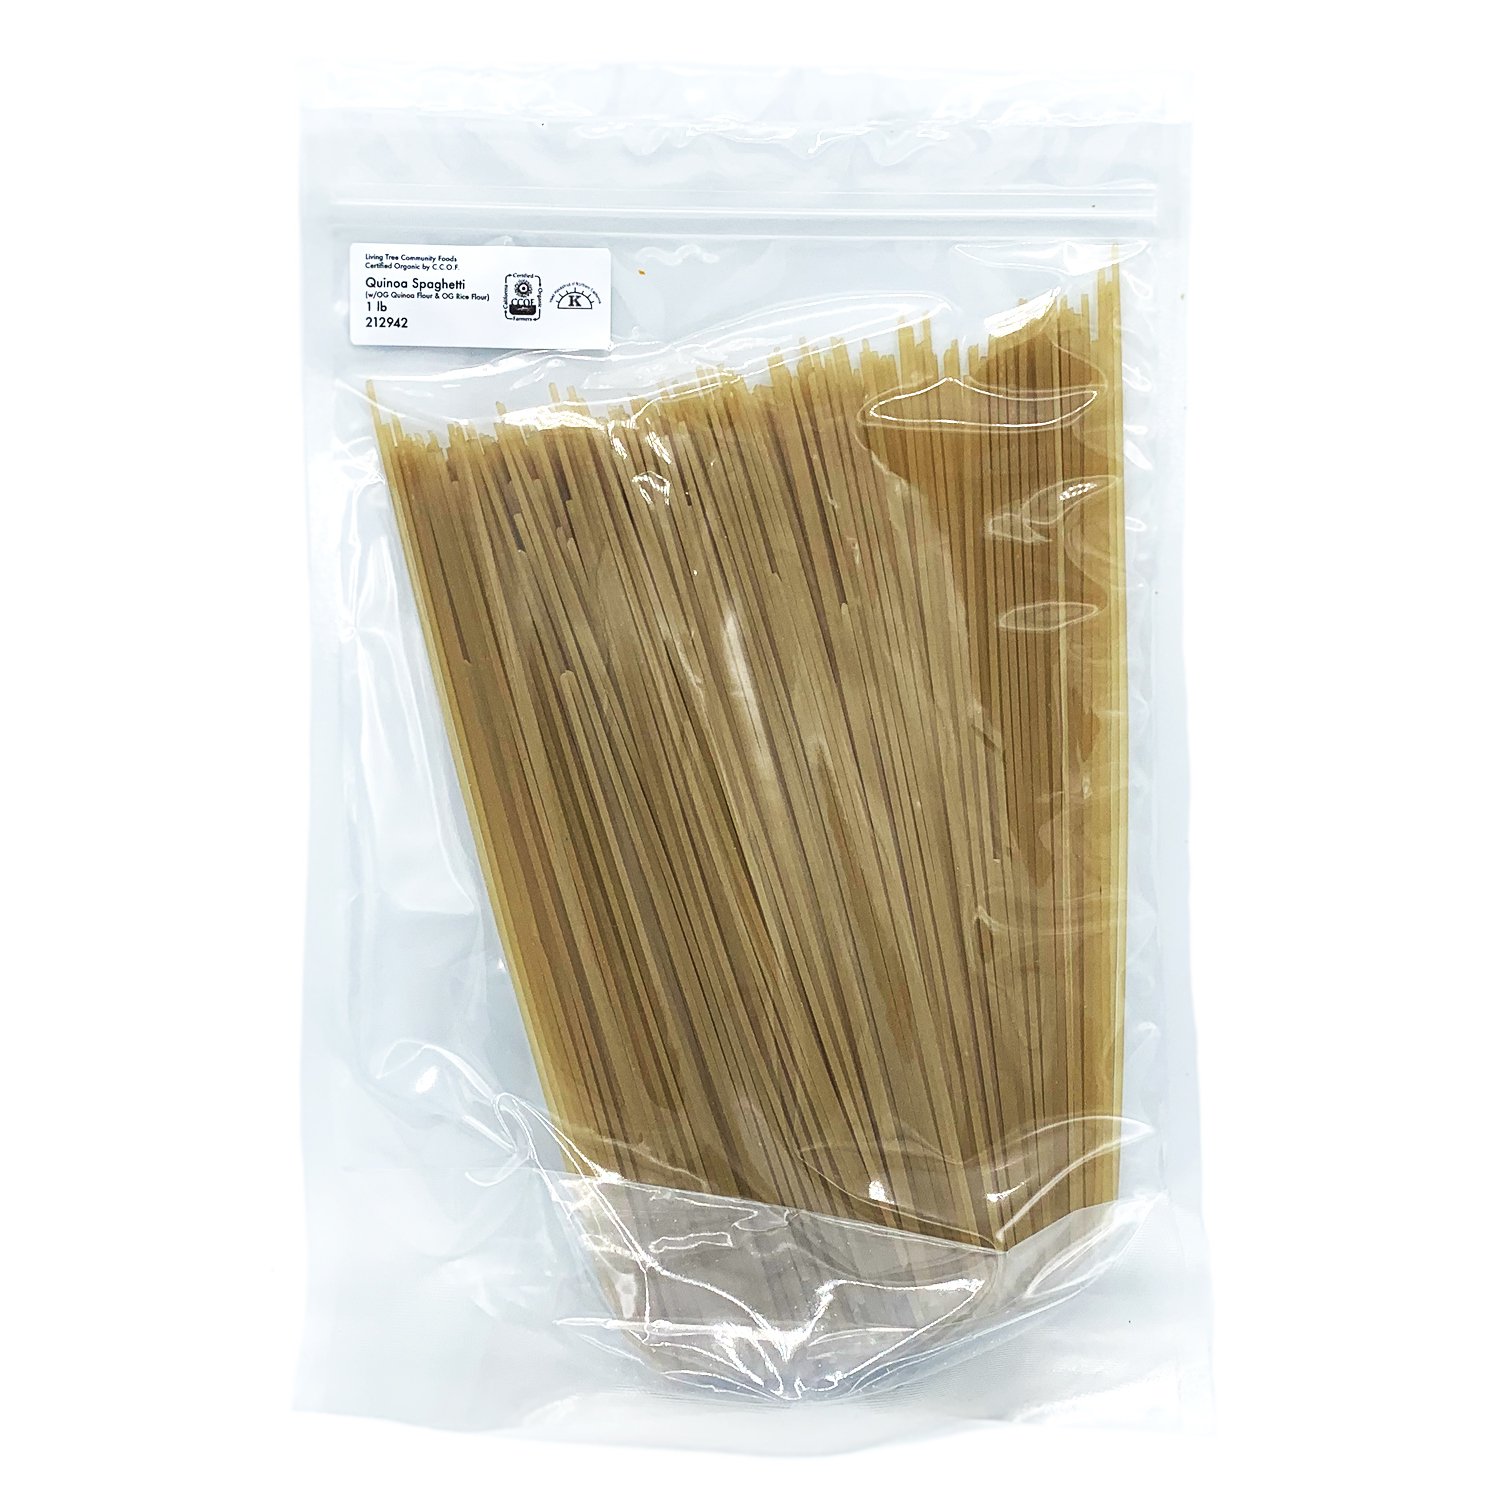 Quinoa Spaghetti Package